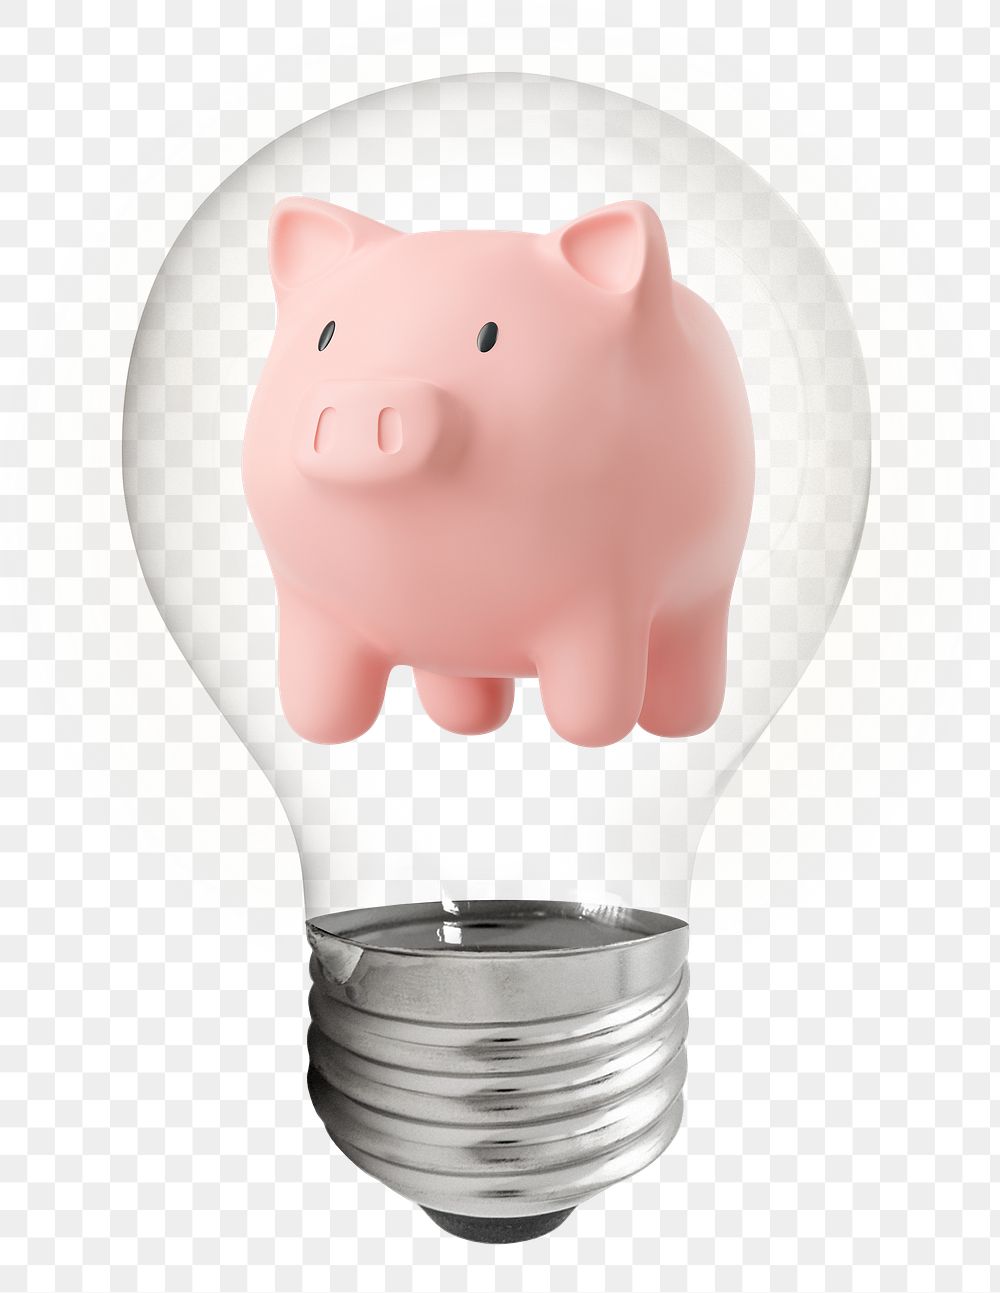 Png 3D piggy bank sticker, finance light bulb art on transparent background